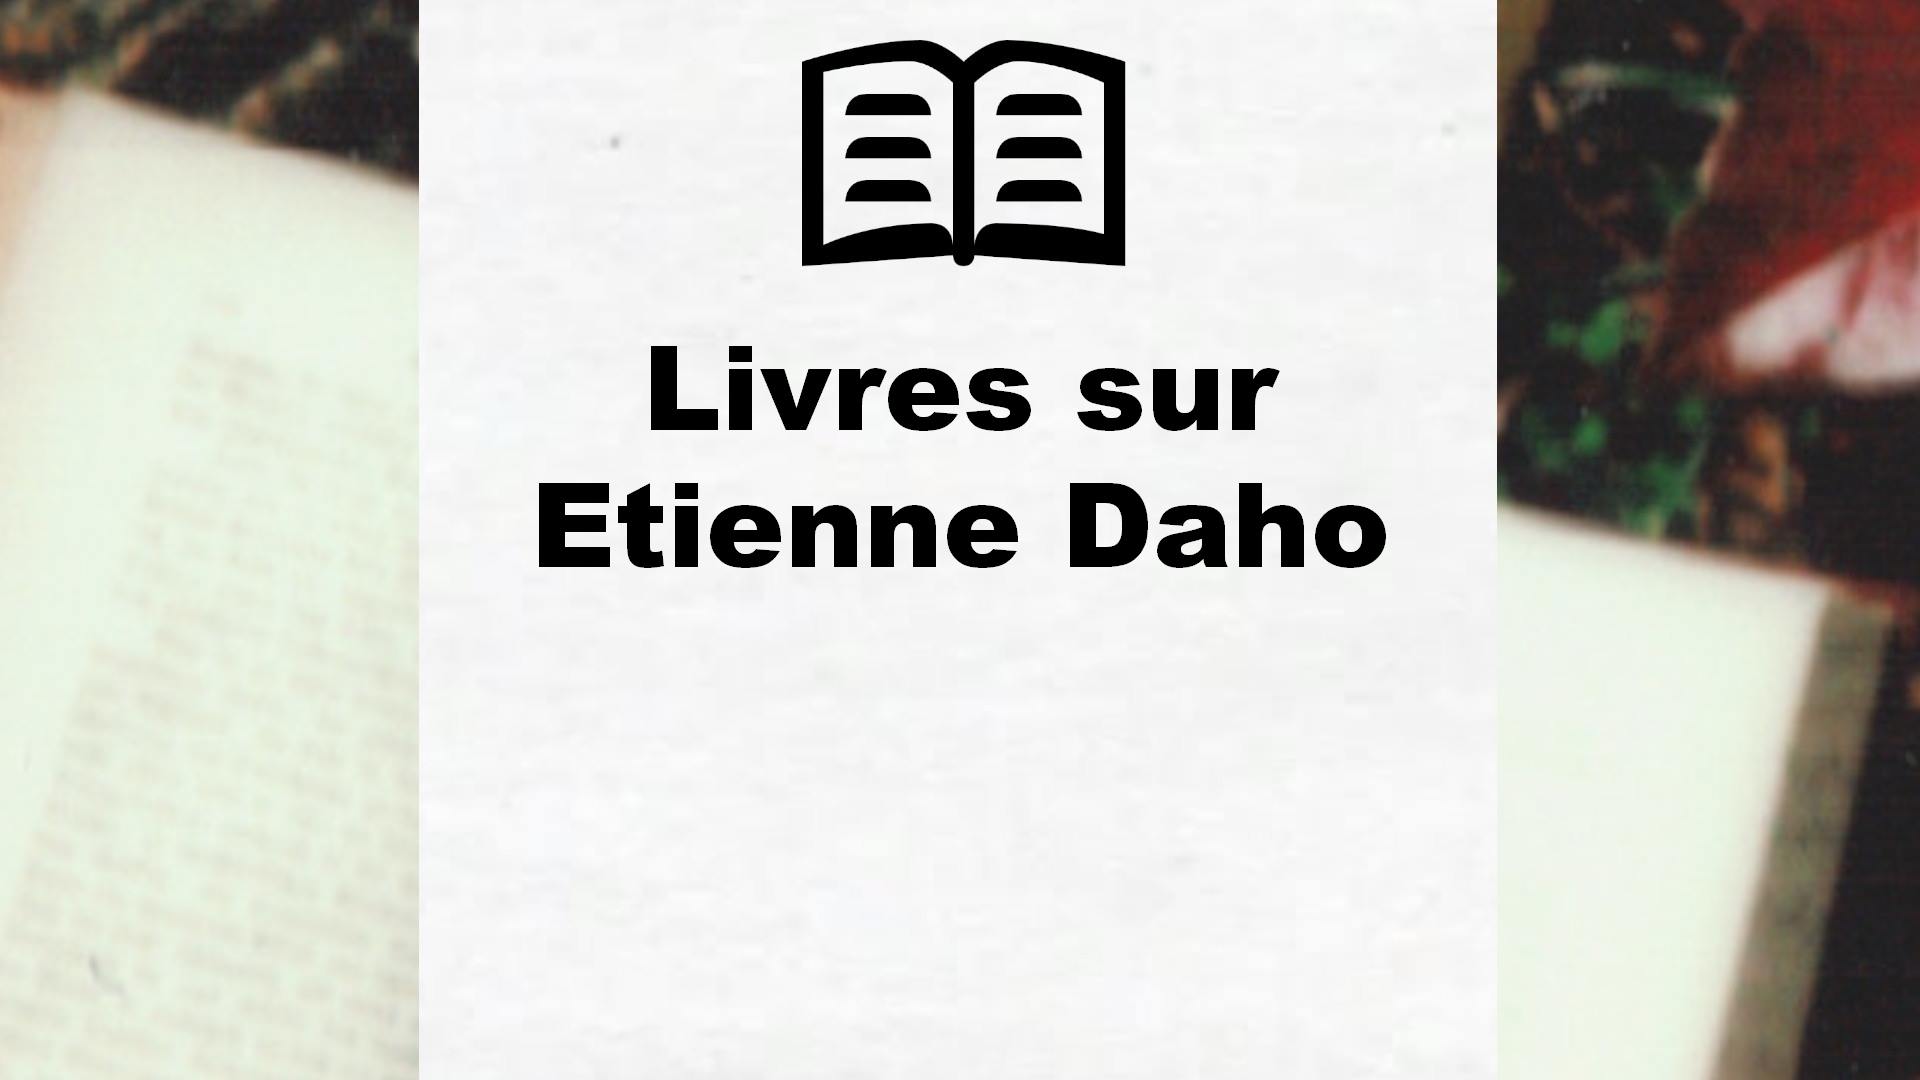 Livres sur Etienne Daho